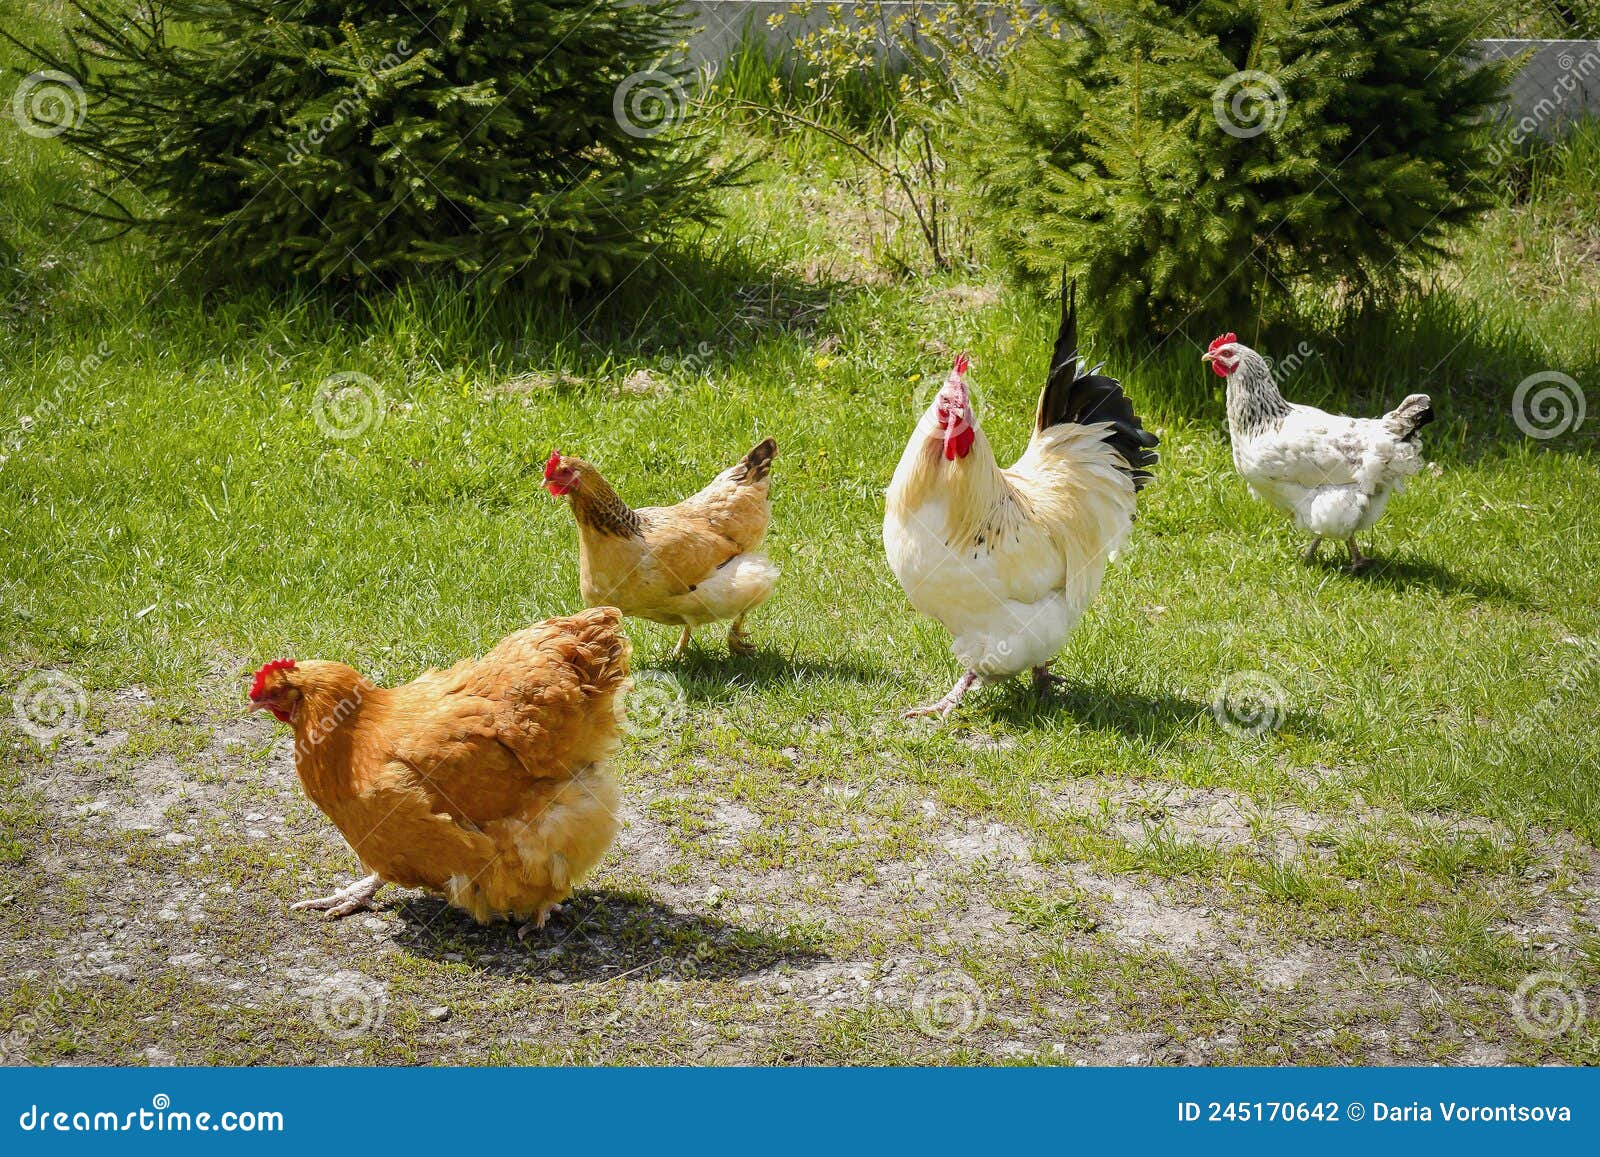 Secondo voi si possono tenere delle galline ovaiole in un giardino o anche  in un orto, tenendole libere? - Quora